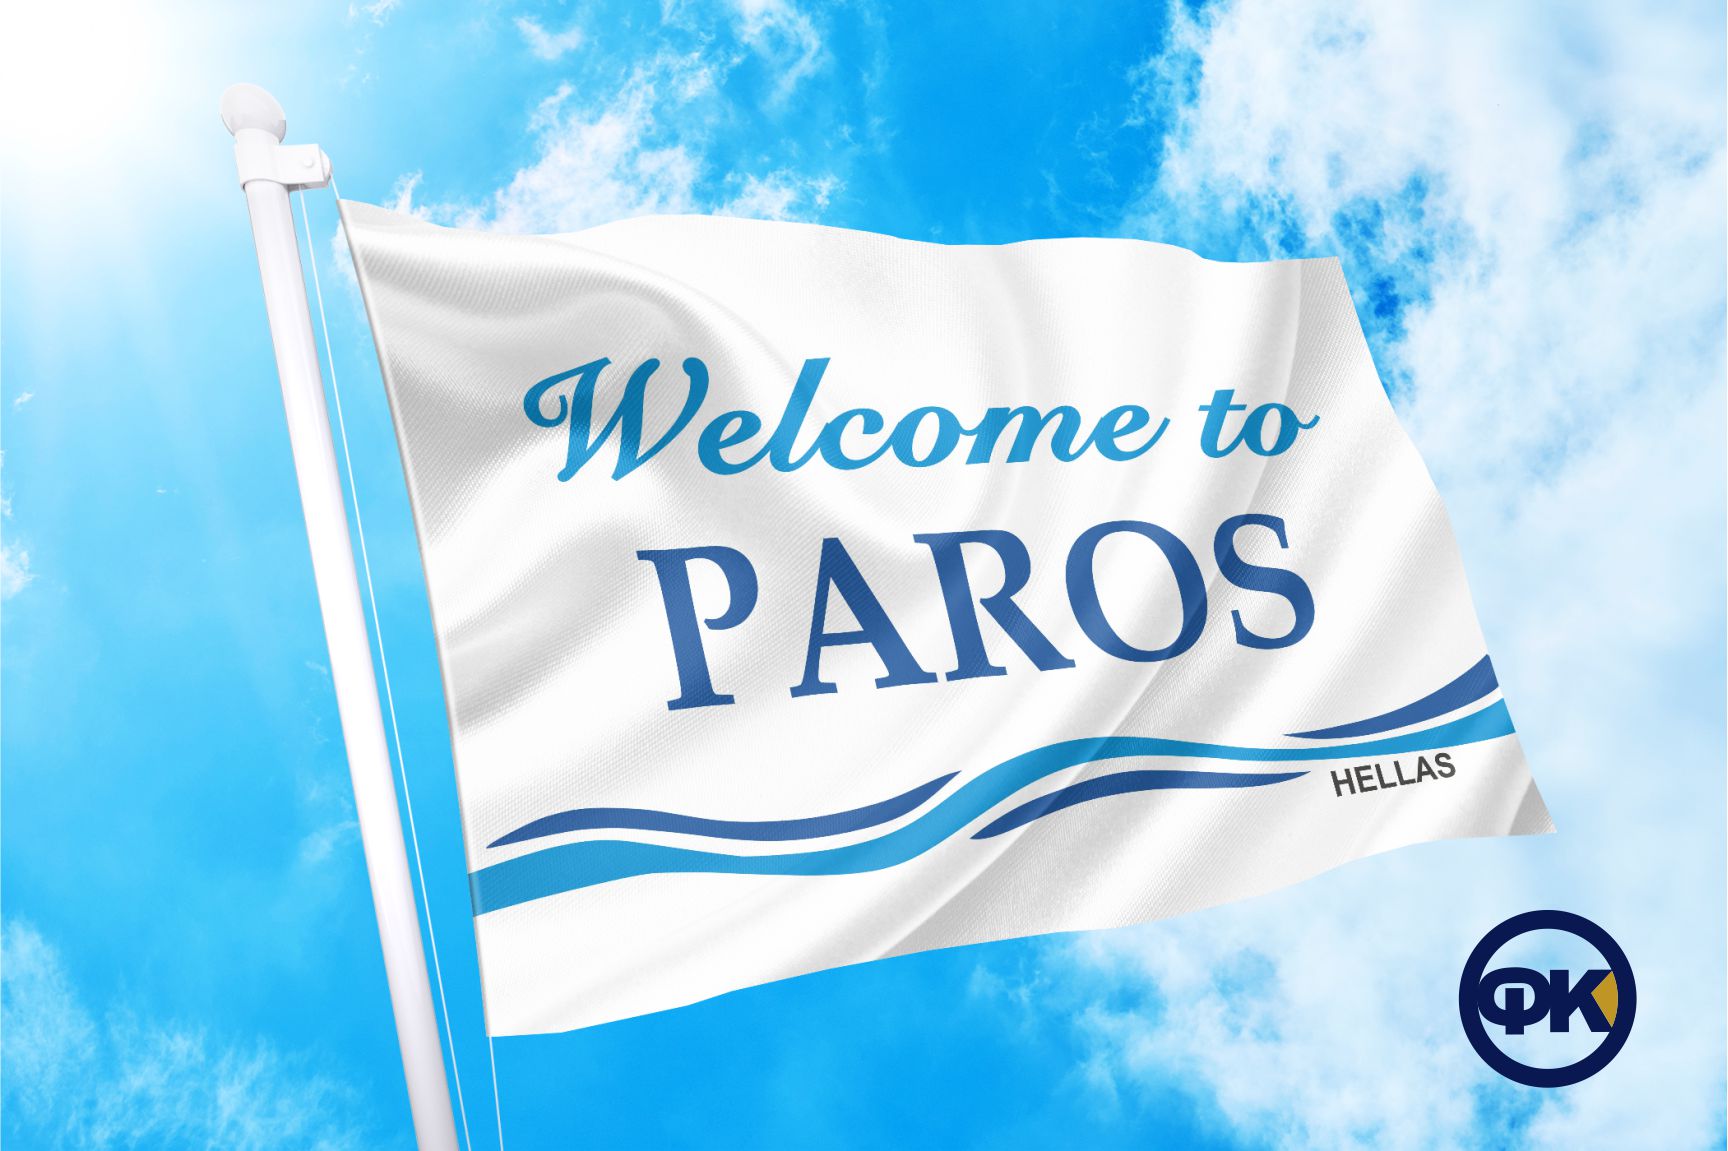 PAROS WELCOME FLAG COCONIS ΣΗΜΑΙΕΣ ΚΟΚΚΩΝΗΣ ΑΓΟΡΑ ΤΙΜΗ